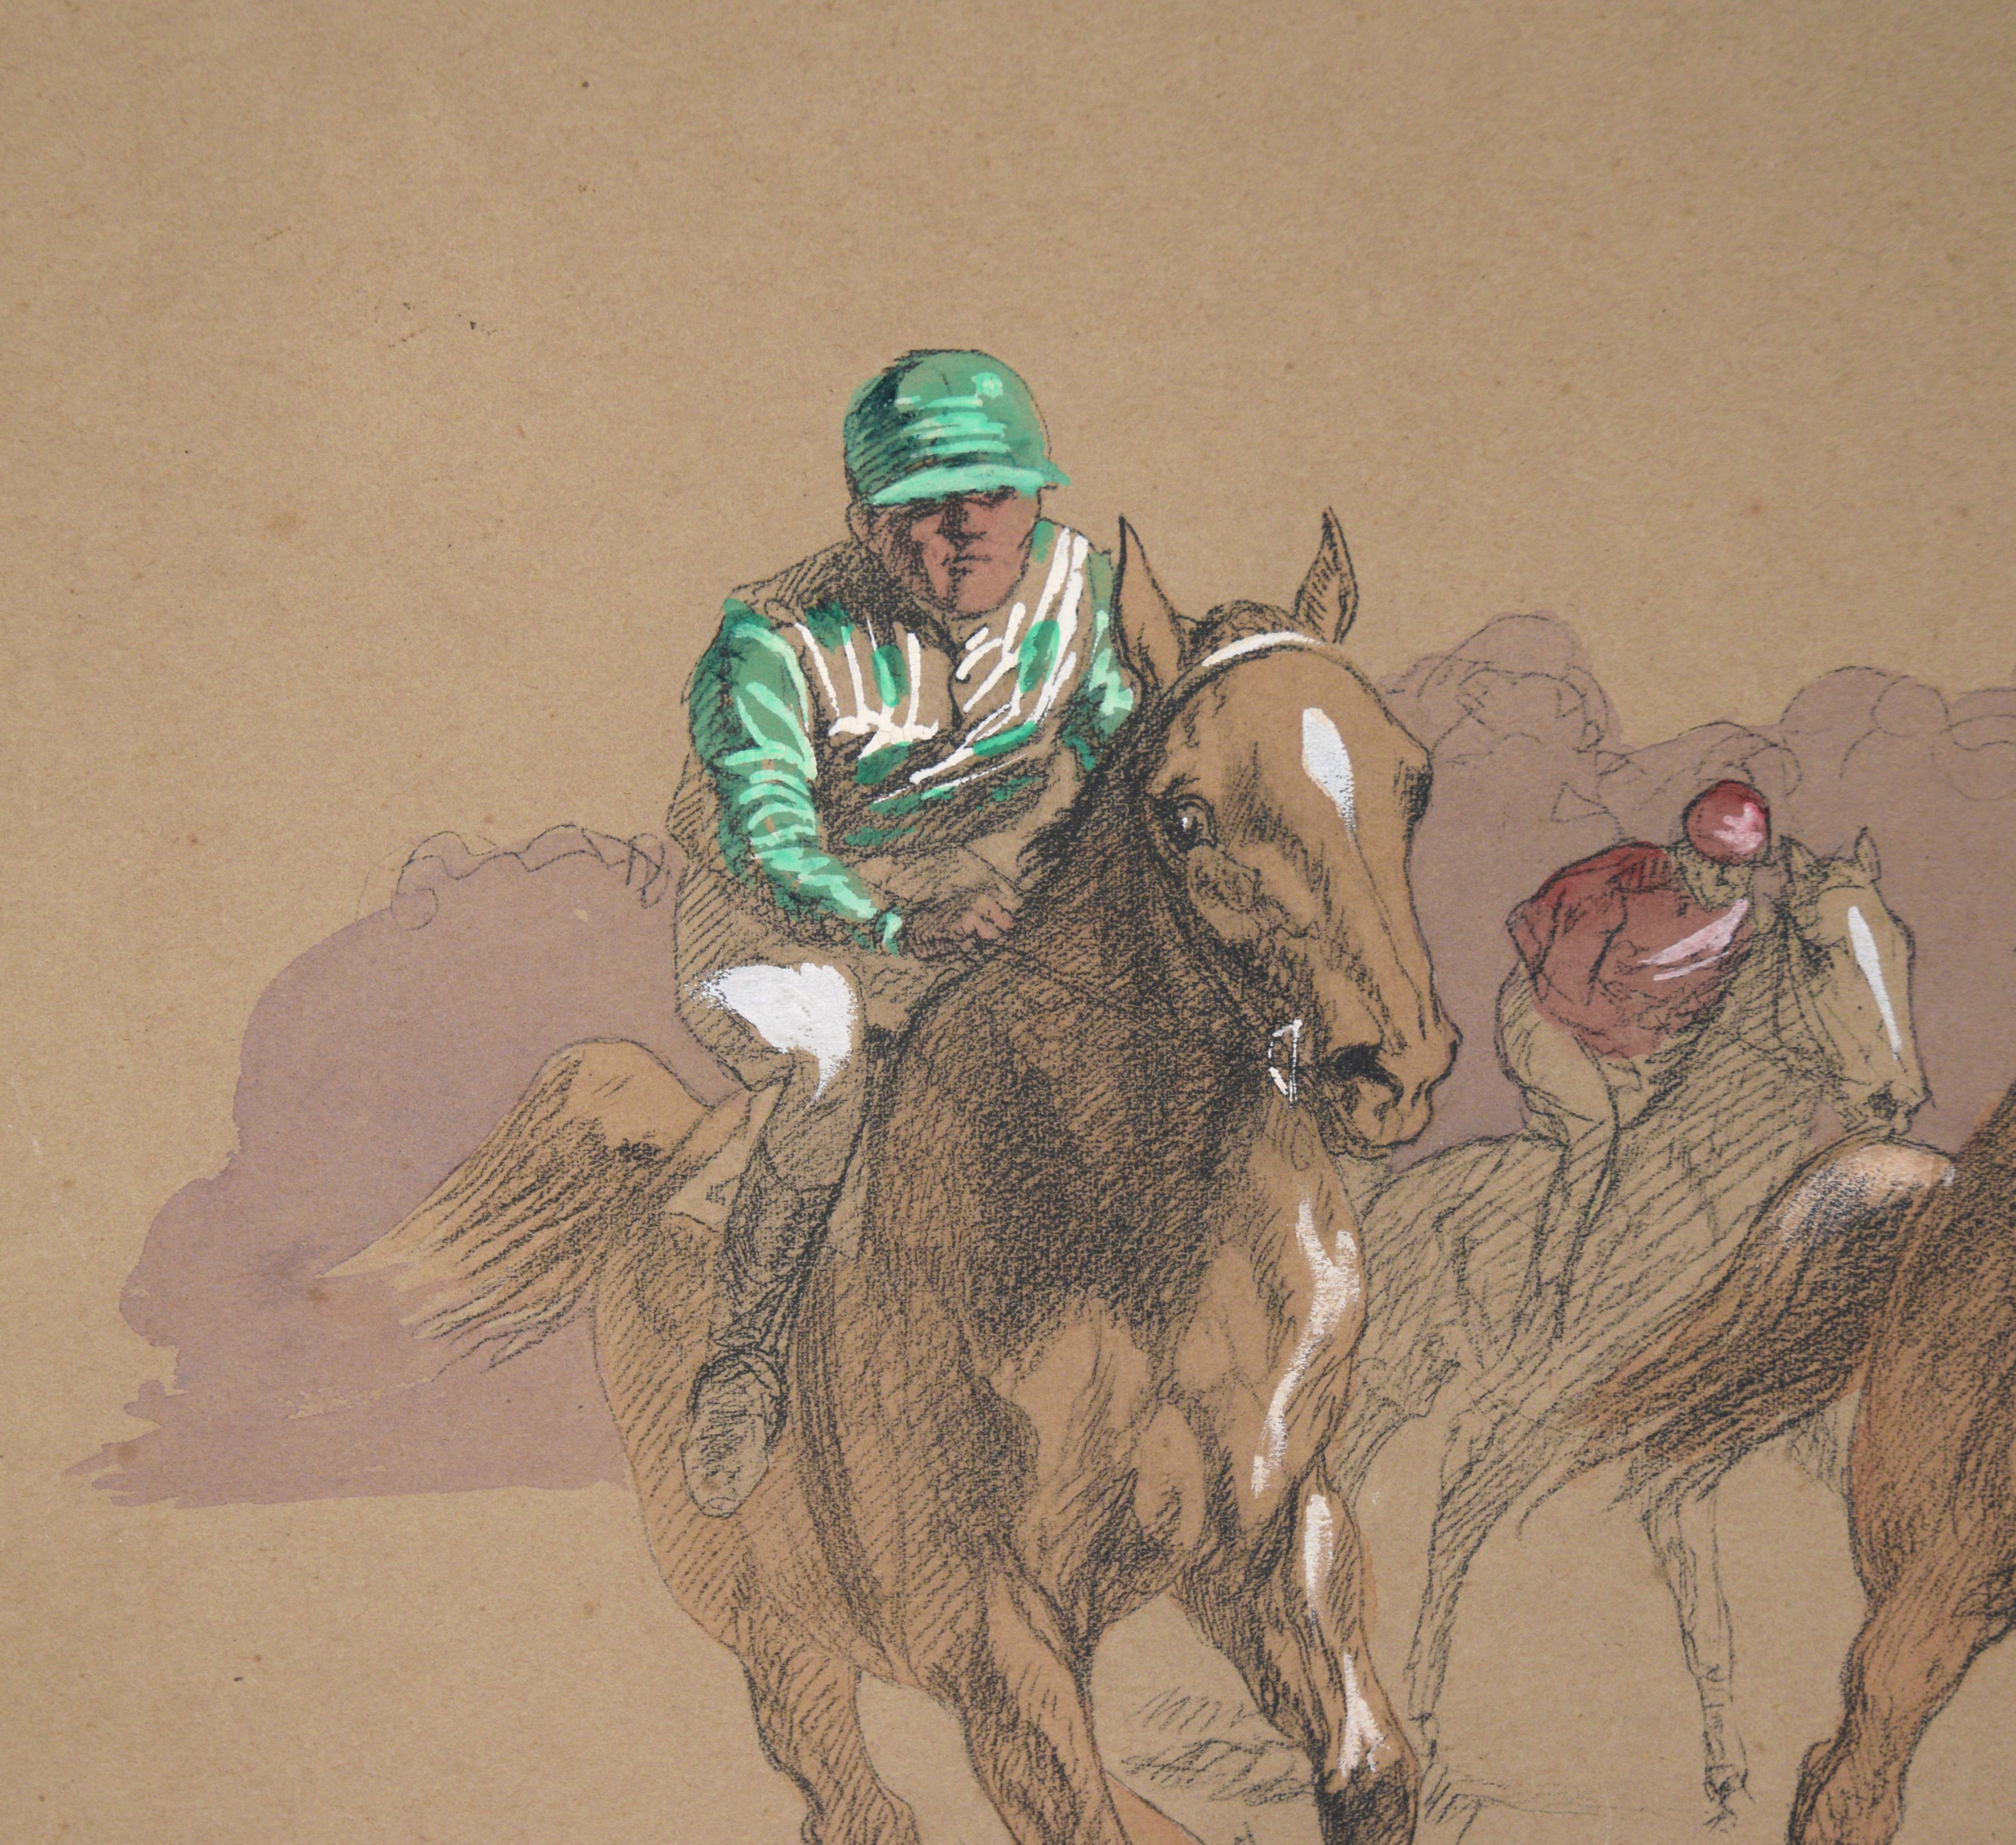 Lithographie colorée à la main en gouache

Lithographie dynamique coloriée à la main par Eugène Pechaubes (français, 1890-1967). Cinq chevaux et leurs cavaliers courent directement vers le spectateur, l'un d'entre eux sautant par-dessus un obstacle